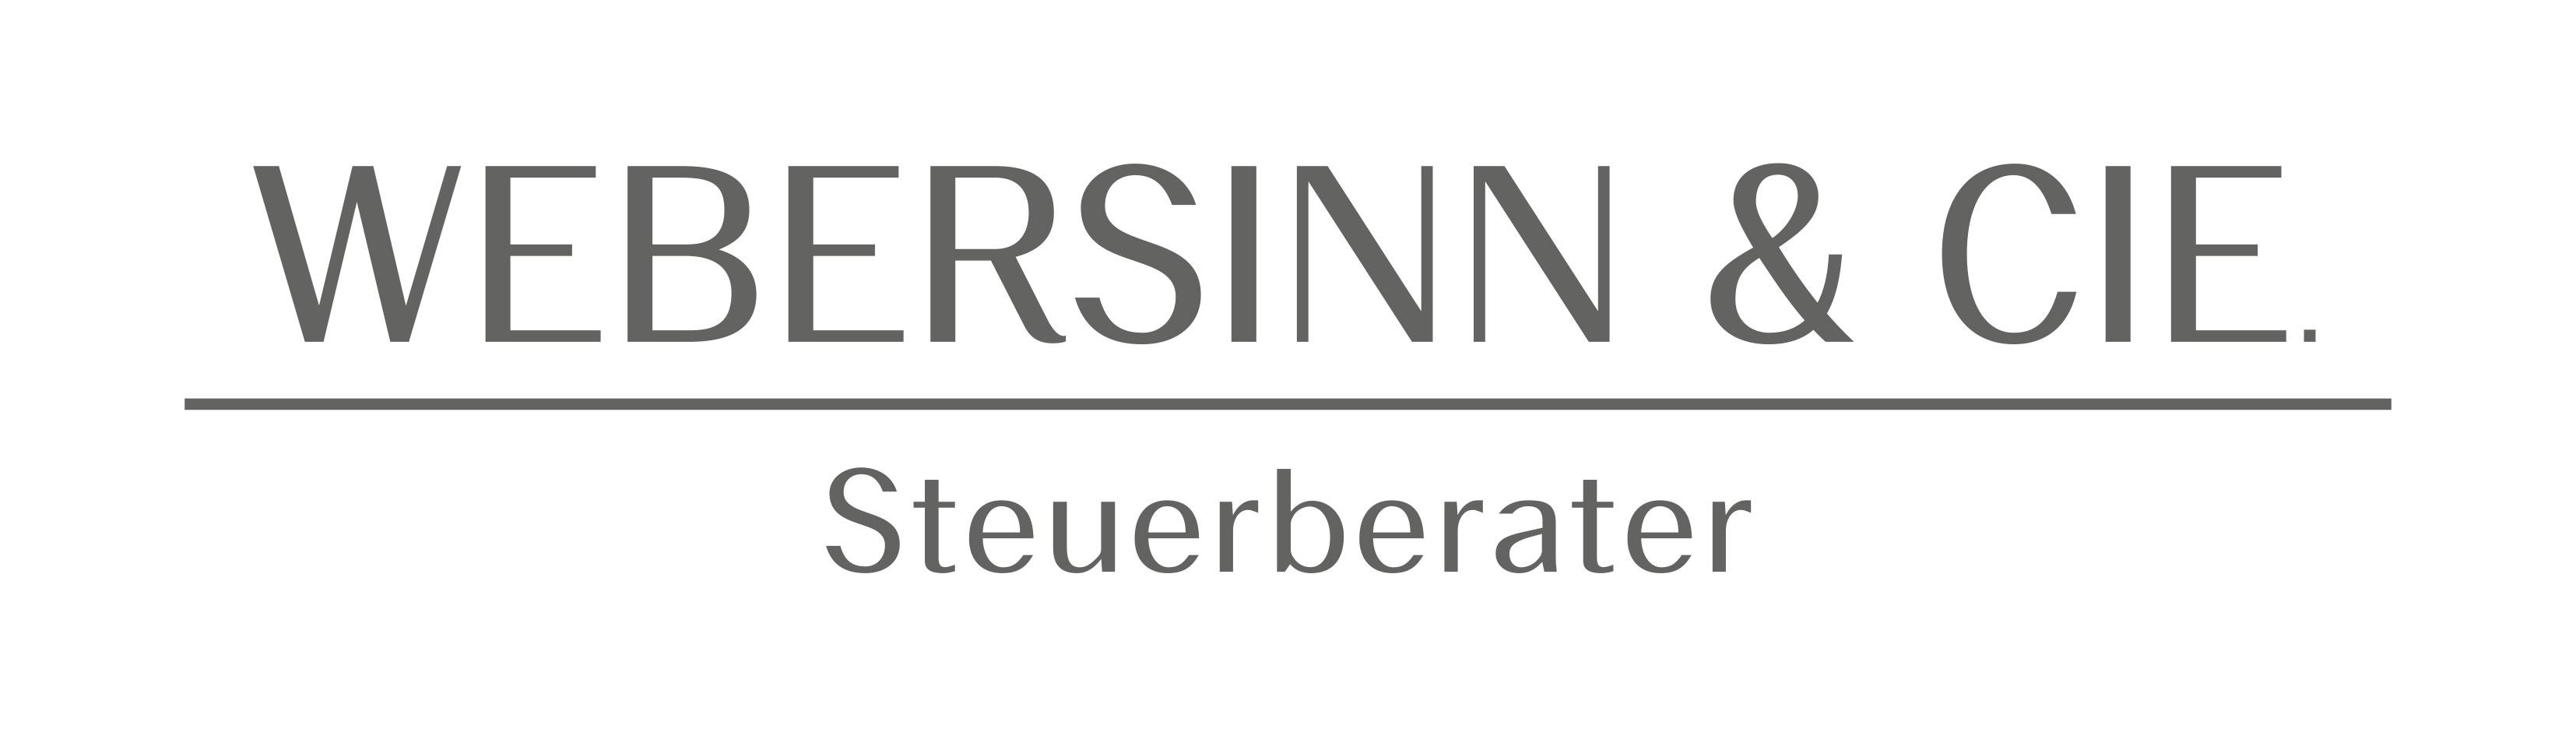 Logo der Steuerberaterkanzlei WEBERSINN & CIE.